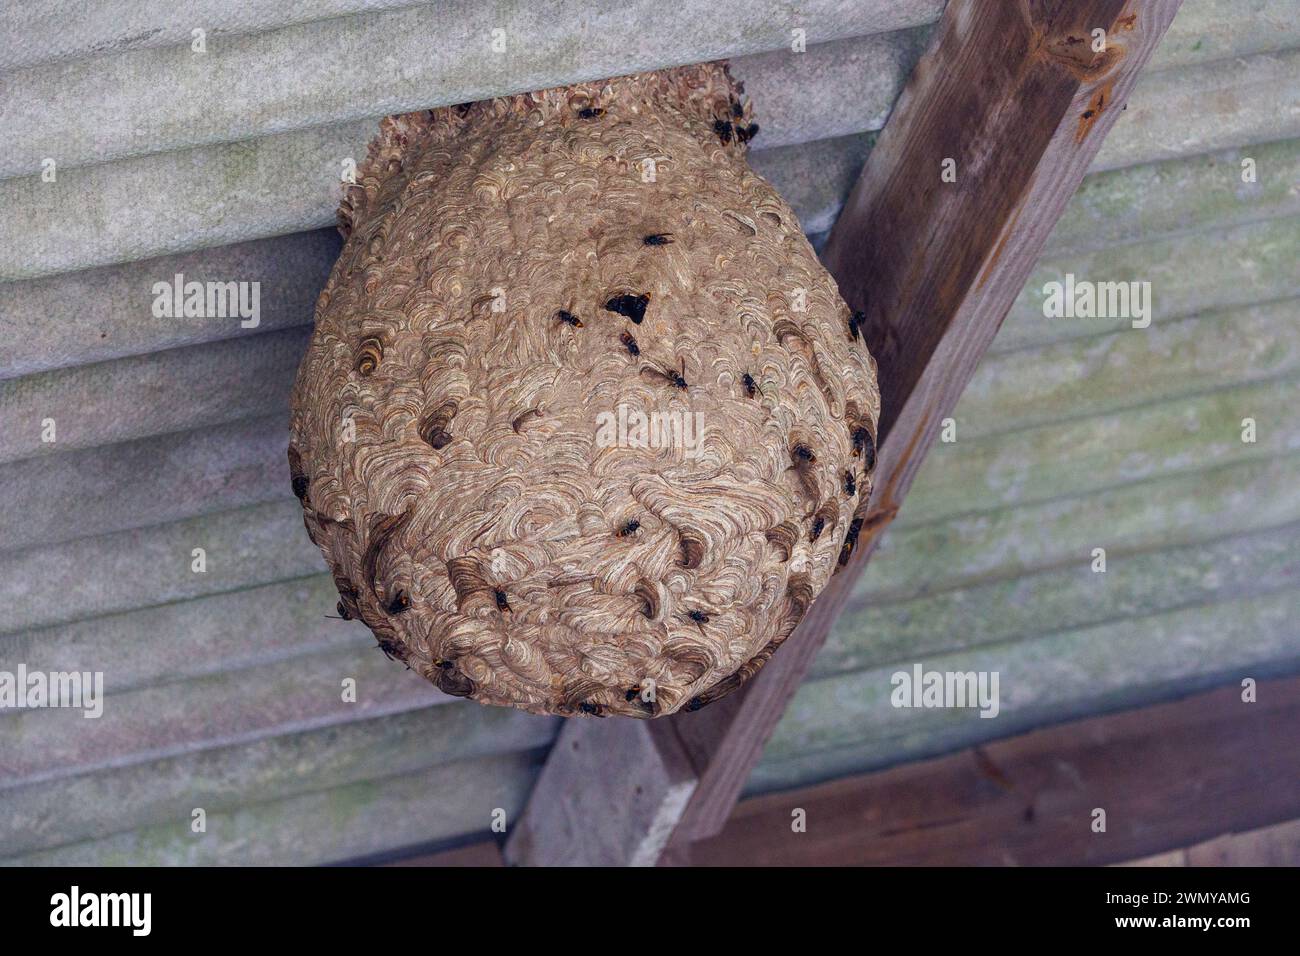 France, Ille et Vilaine, Le Rheu, Nest of Asian hornets, Asian hornet or yellow legged hornet (Vespa velutina), nest in a barn Stock Photo